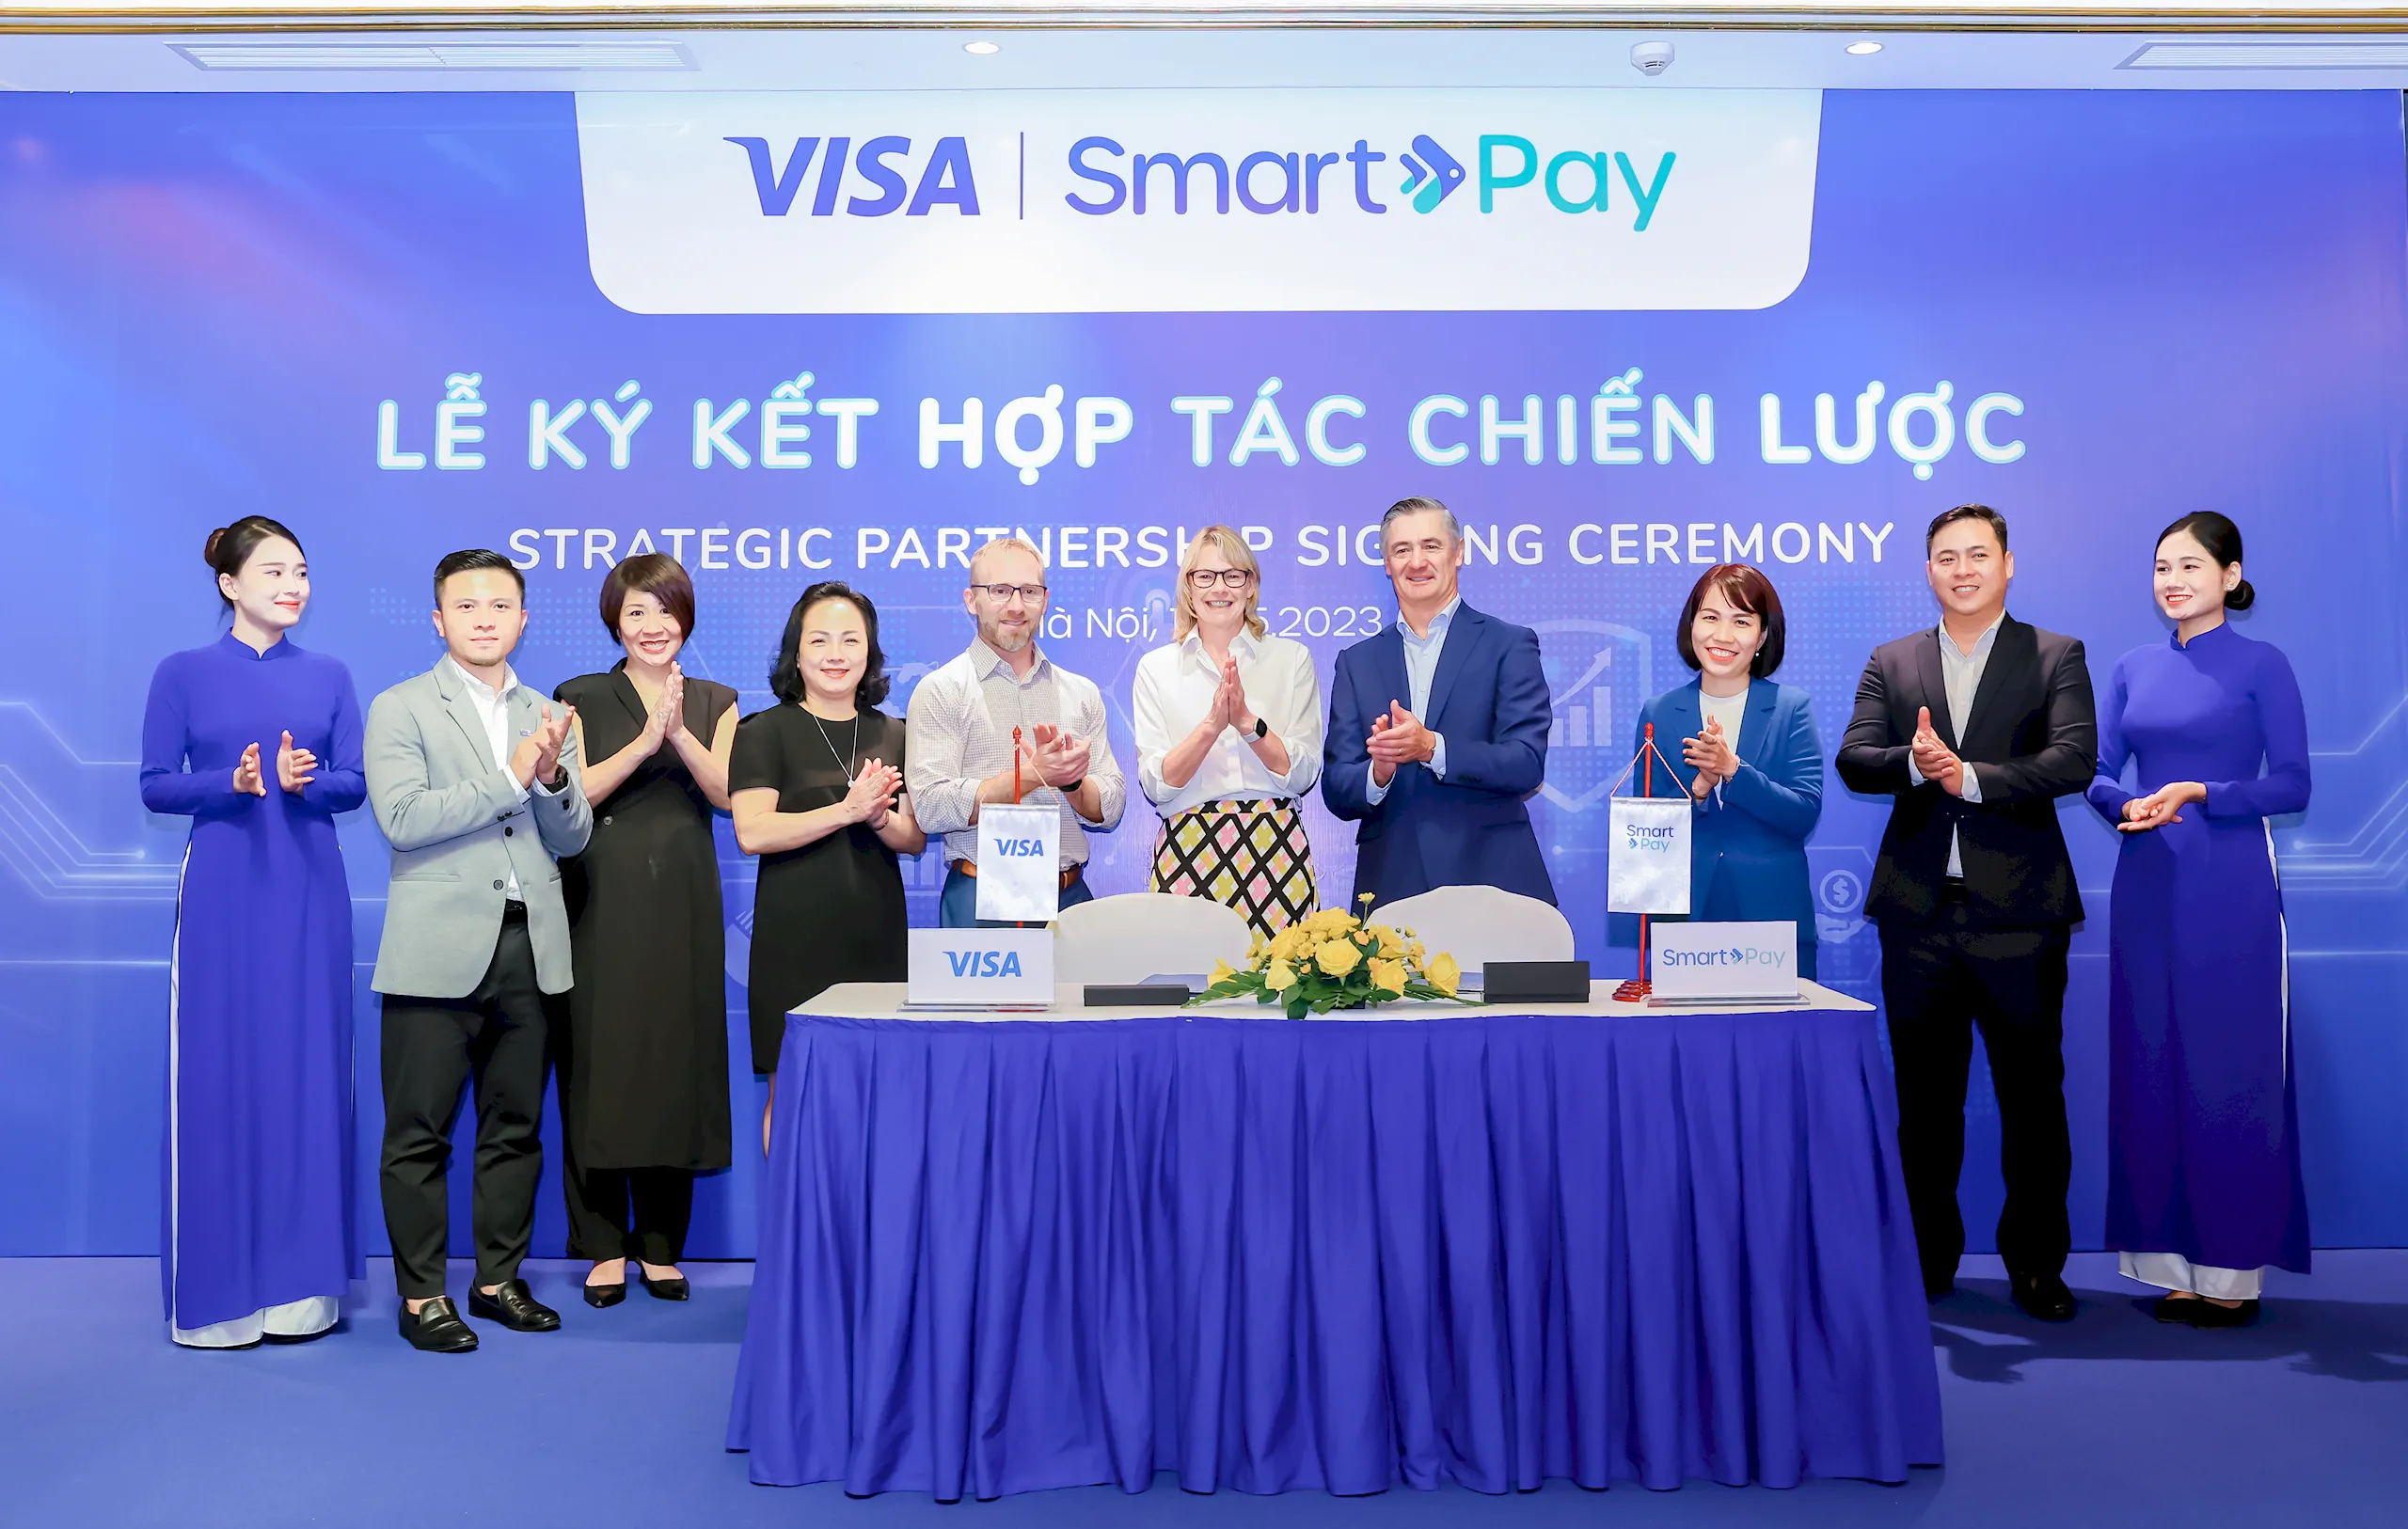 Visa hợp tác cùng SmartPay thúc đẩy các giải pháp thanh toán số cho doanh nghiệp vừa, nhỏ và siêu nhỏ